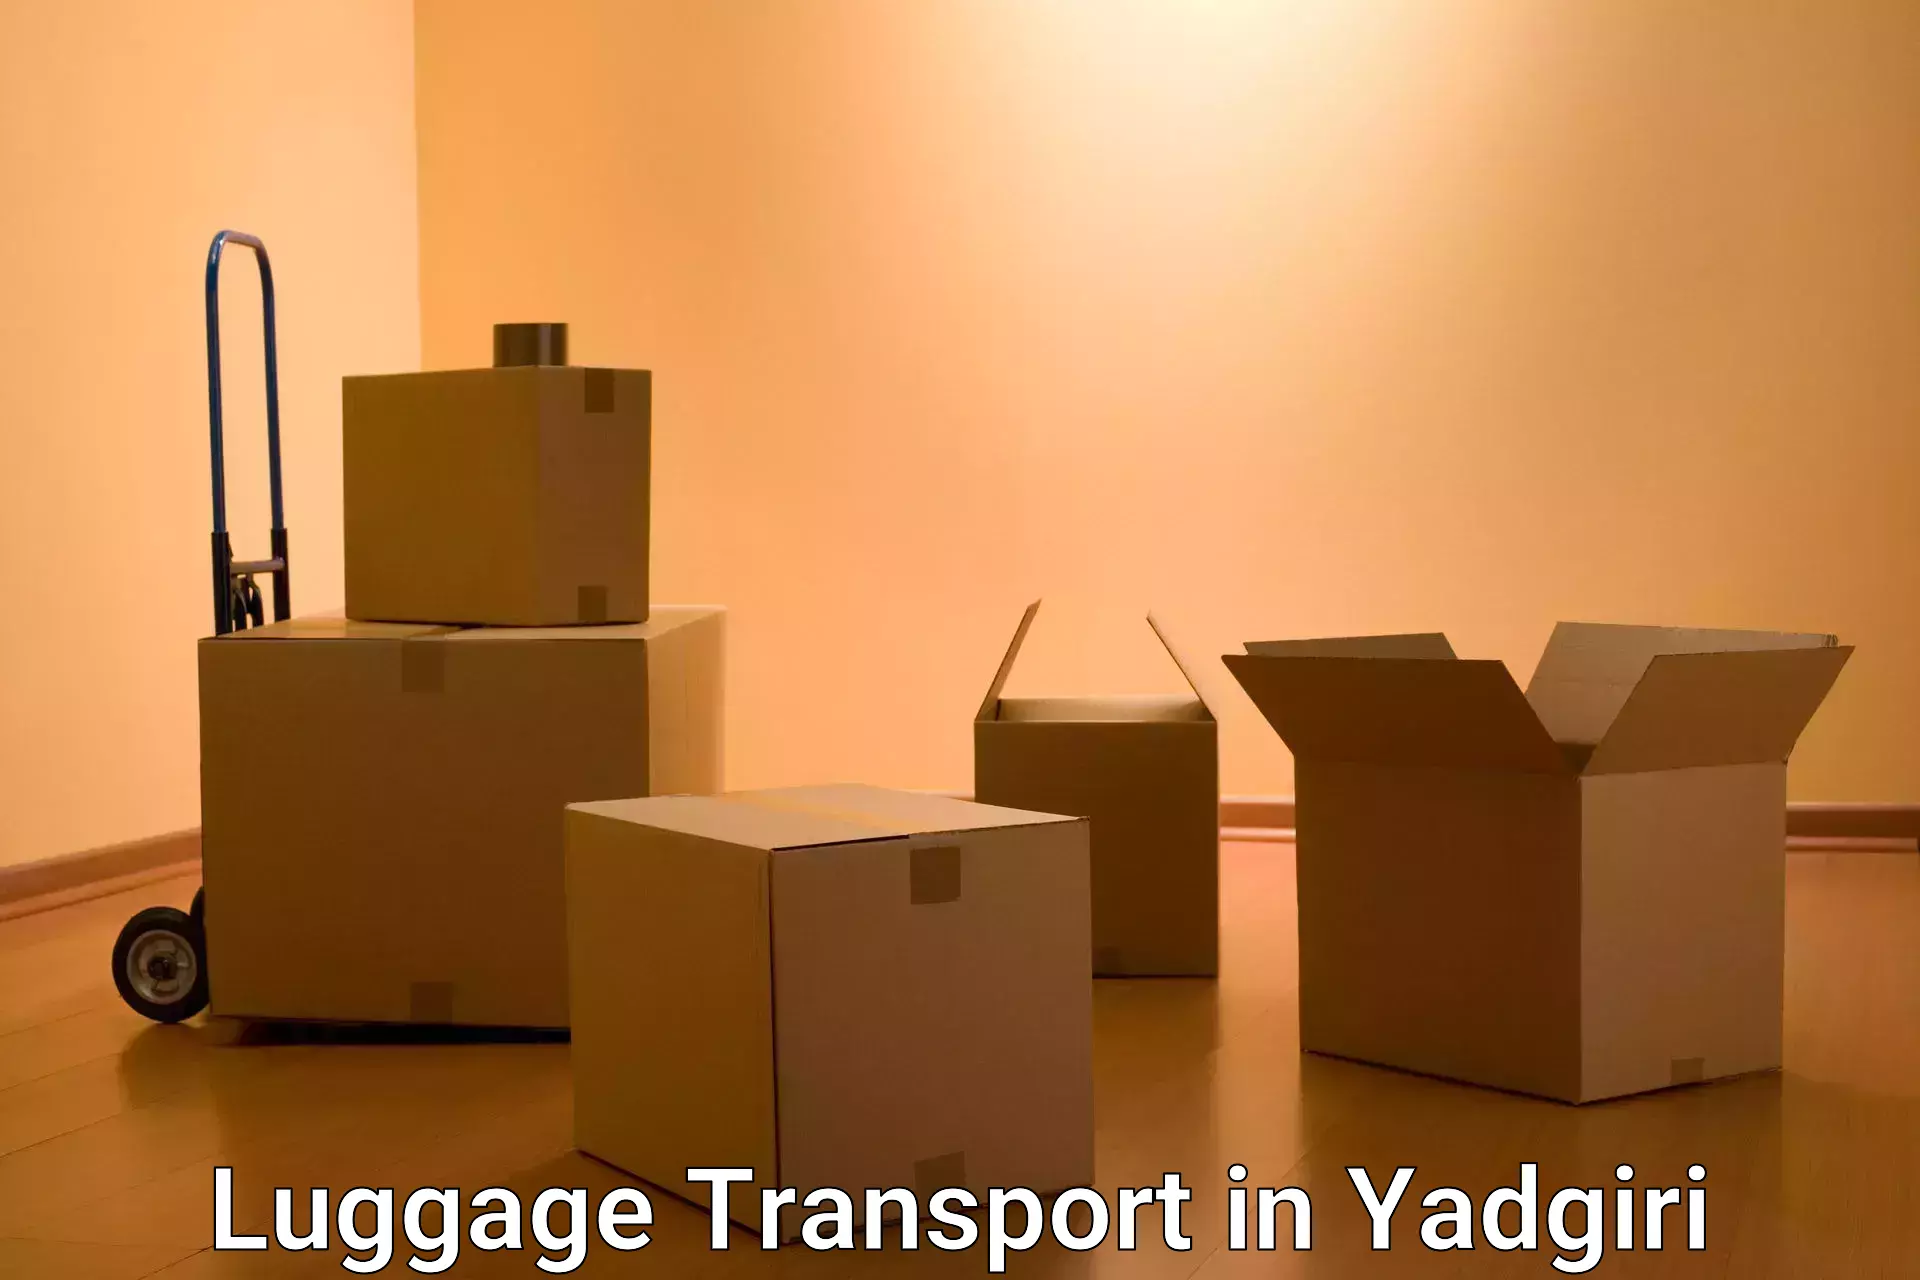 Regional luggage transport in Yadgiri